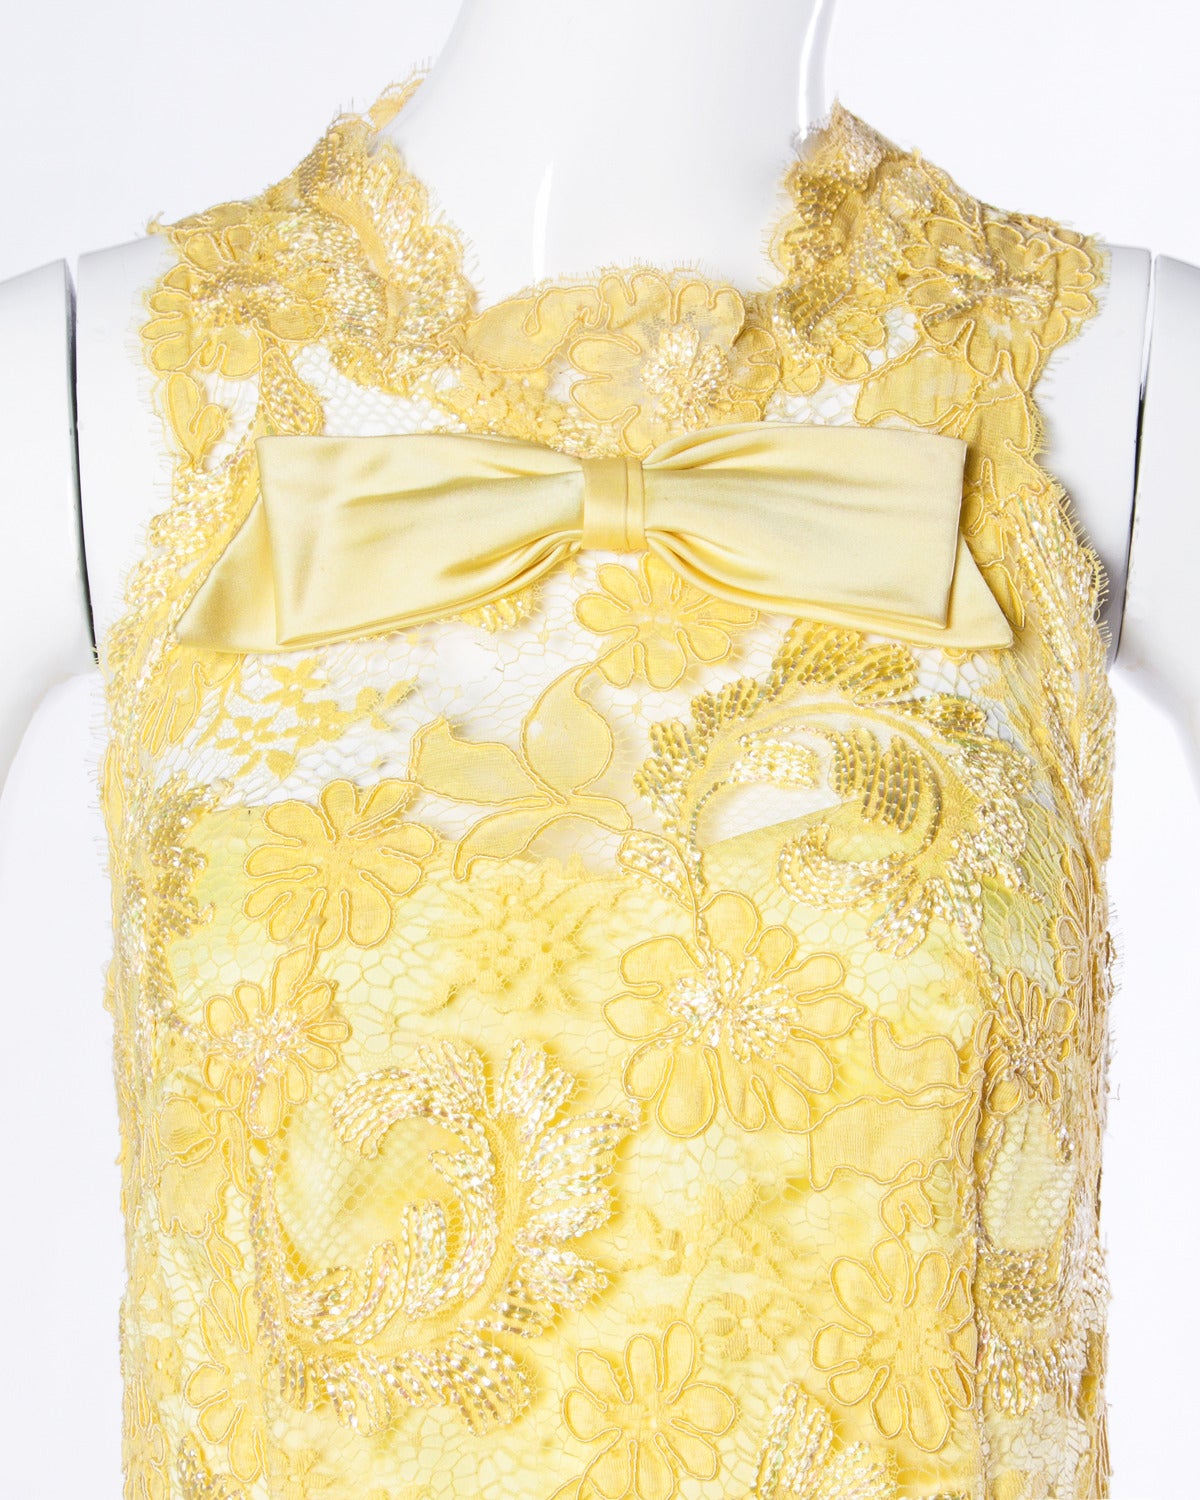 Wunderschönes gelbes Spitzen-Etuikleid mit Schleife und Metallic-Faden-Akzenten. Dieses Kleid ist sehr gut verarbeitet und weist im gesamten Kleid Couture-Handnähte auf. Die Spitzenarbeit ist einfach atemberaubend!

Einzelheiten:

Teilweise